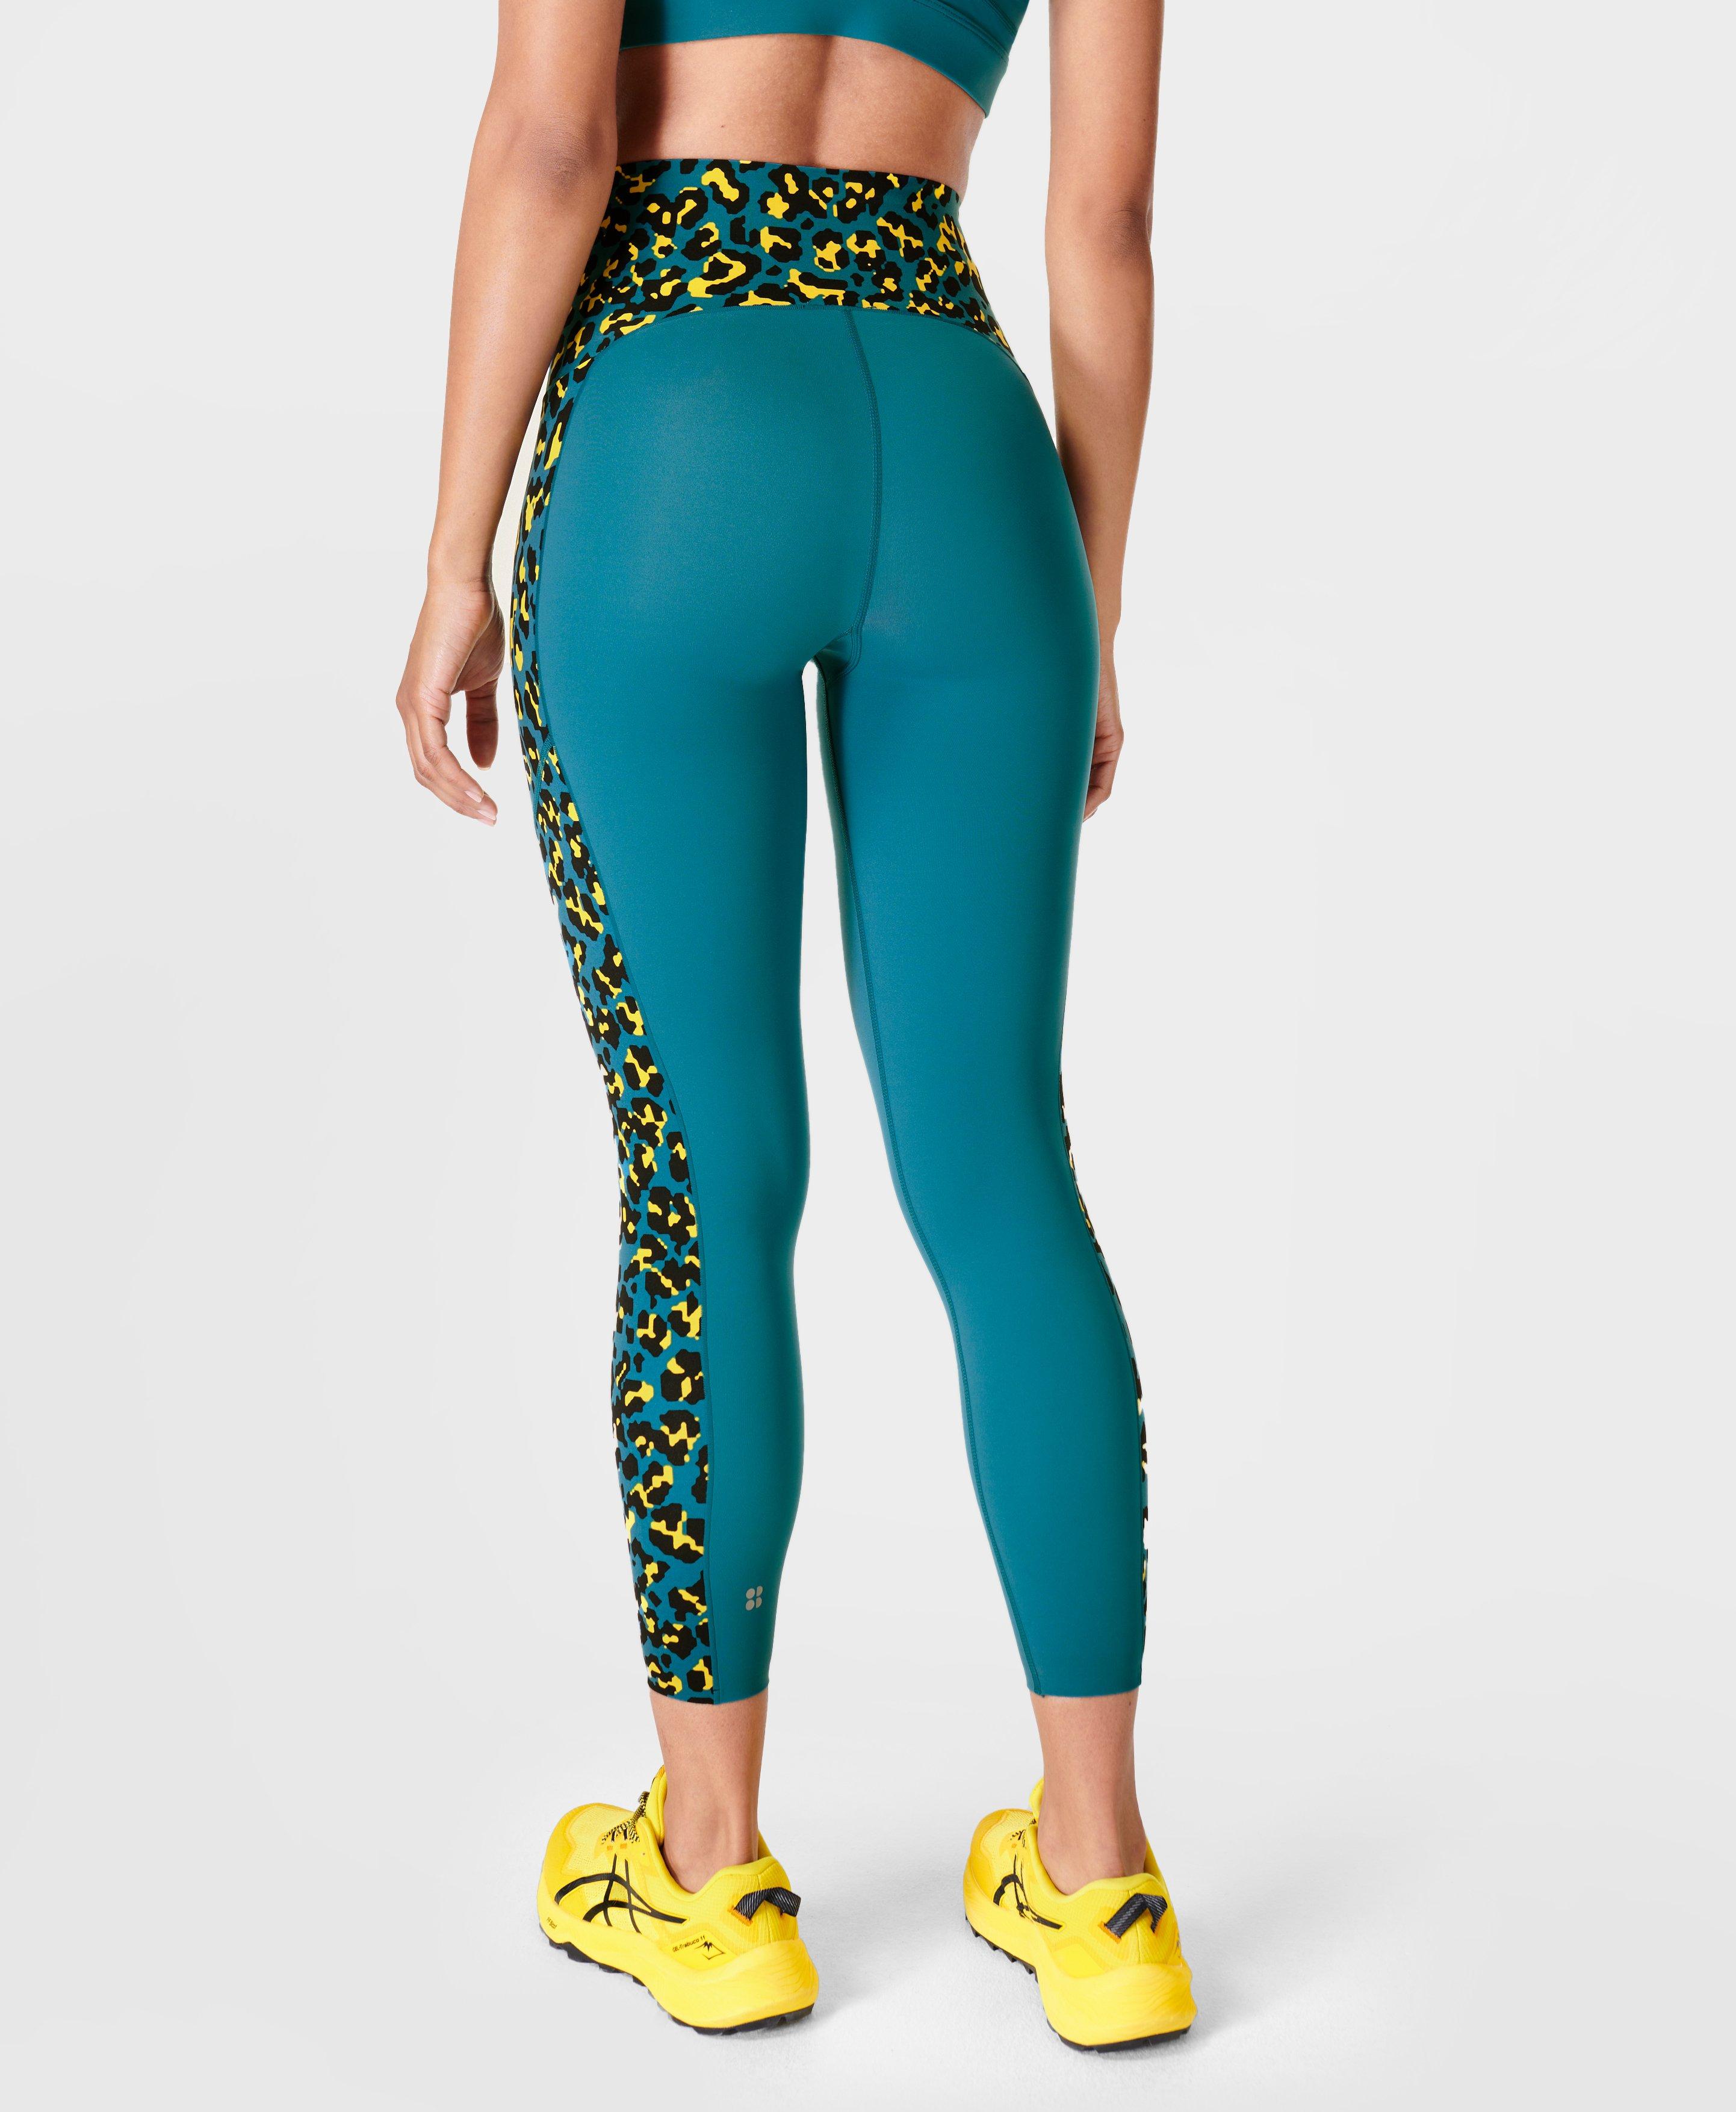 High waist women's leopard print leggings